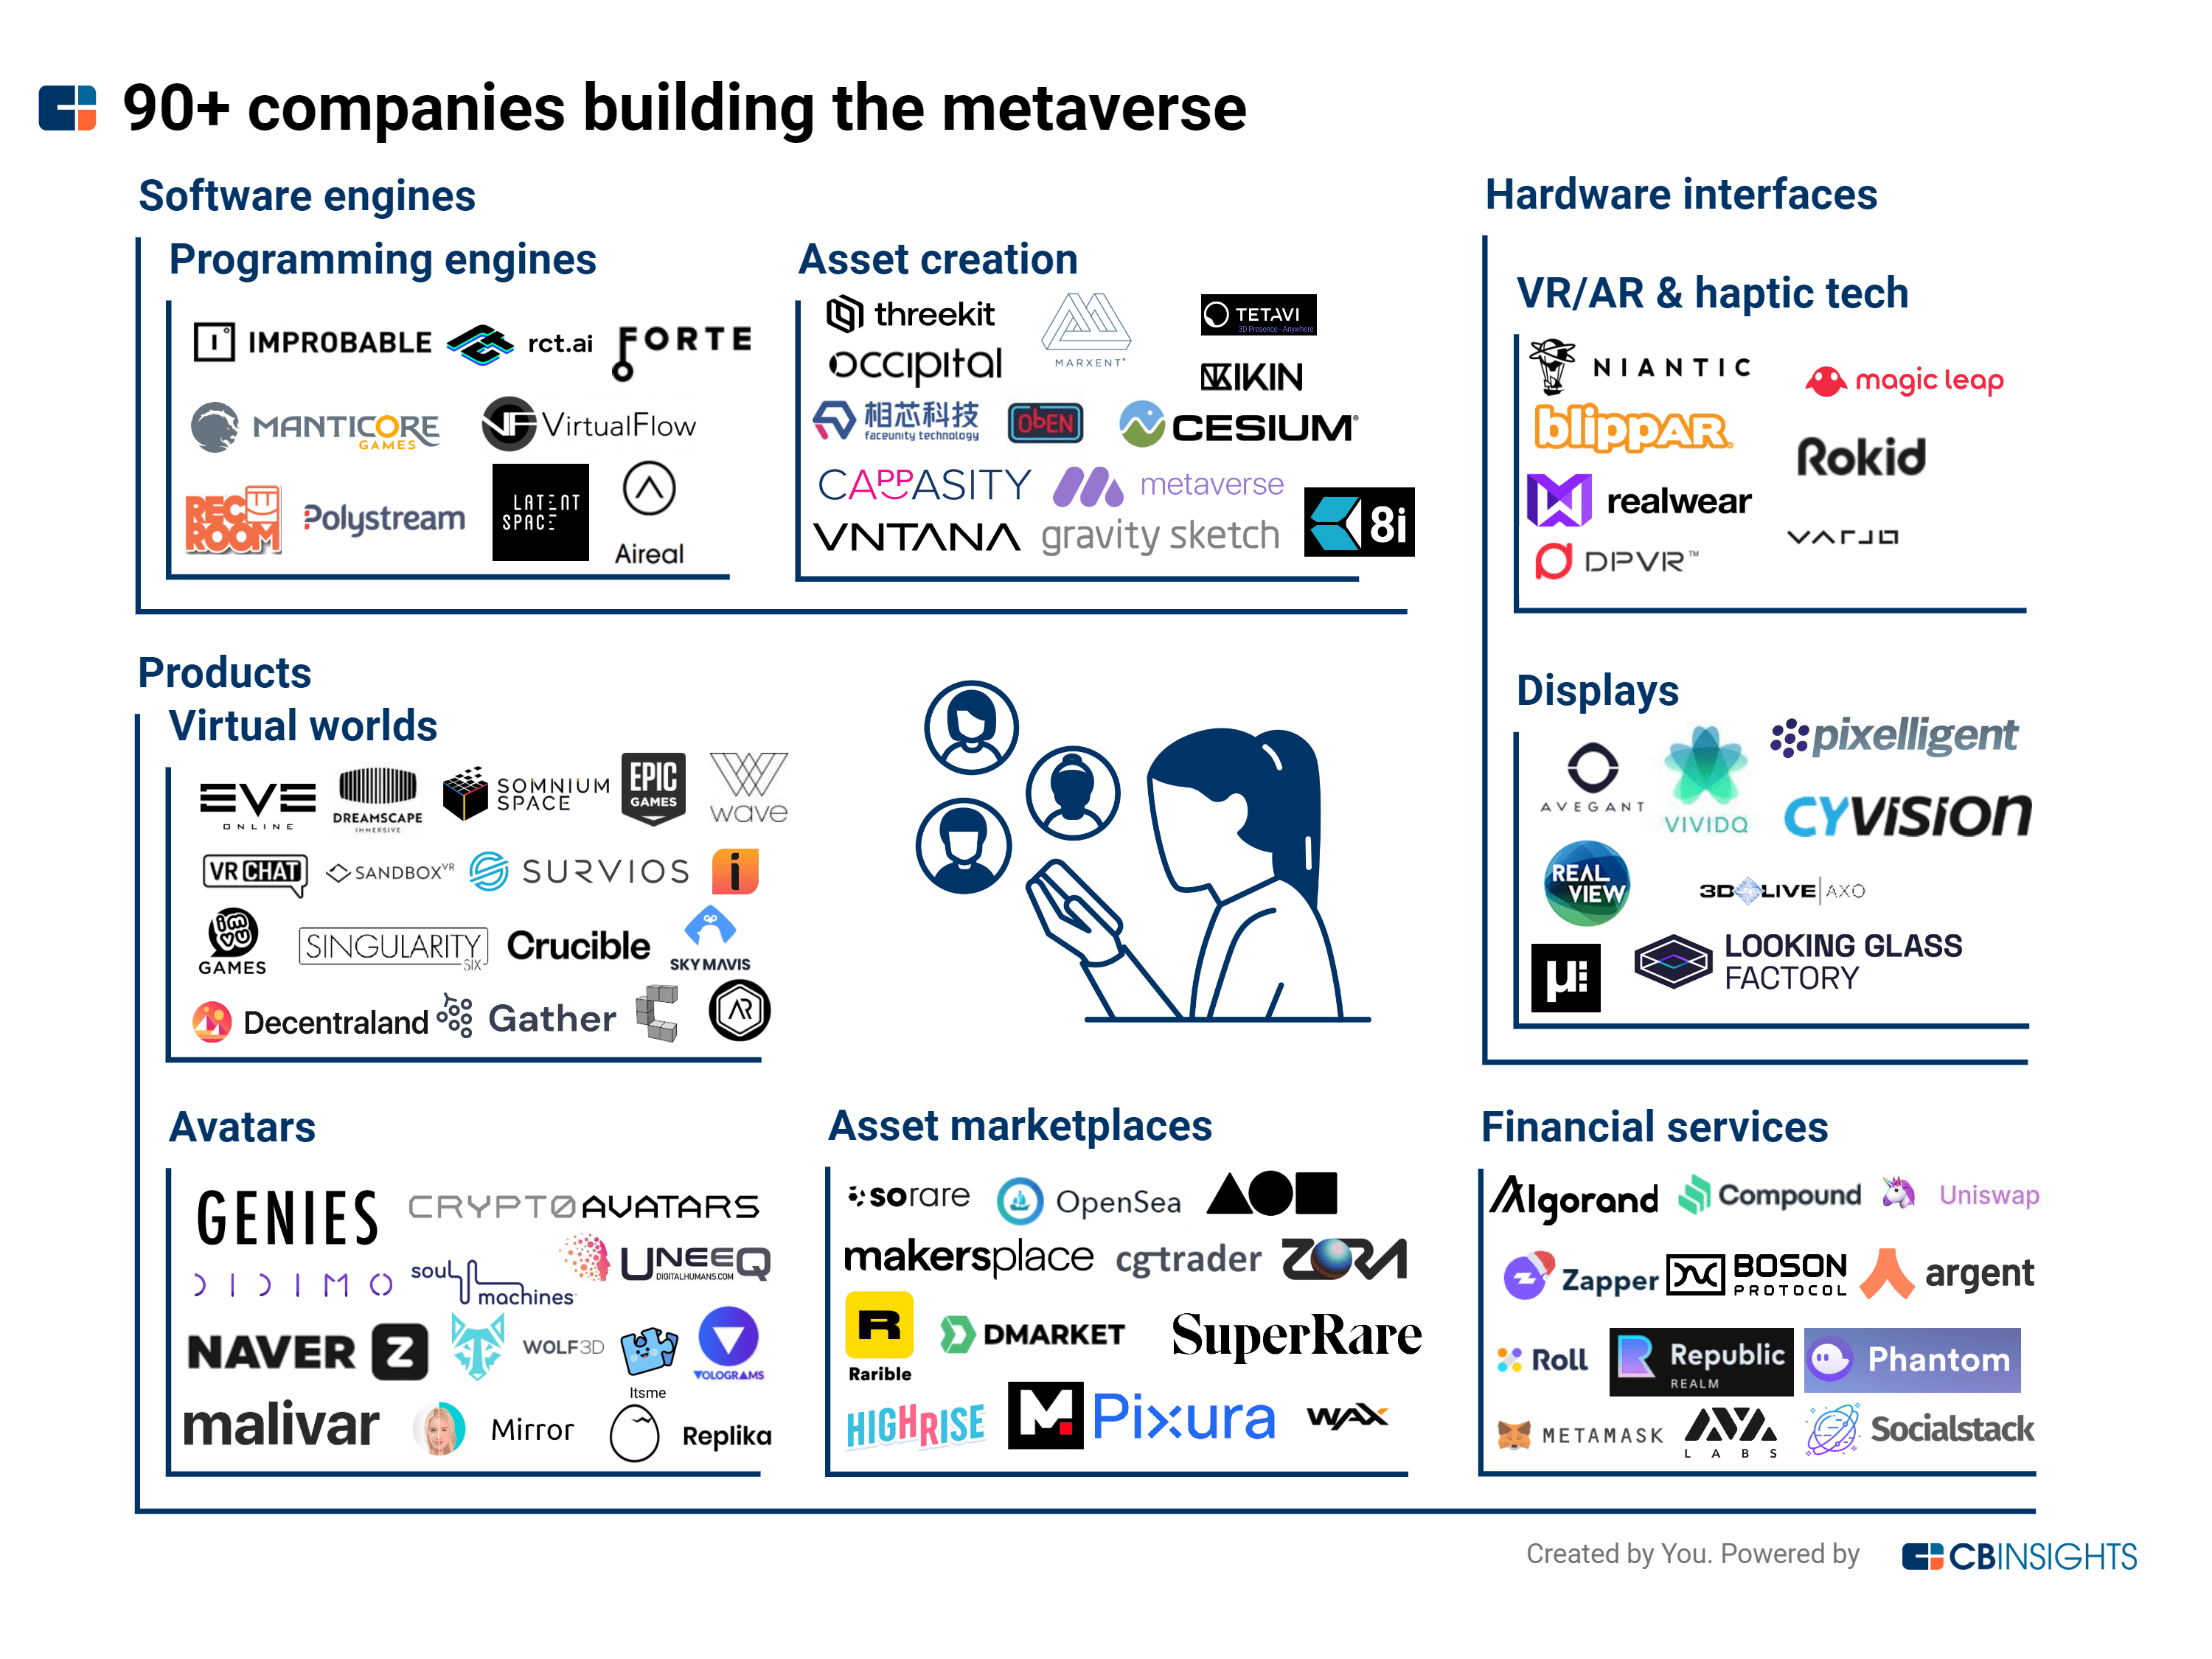 Les 90 entreprises qui construisent le métaverse - Source : cbinsights.com